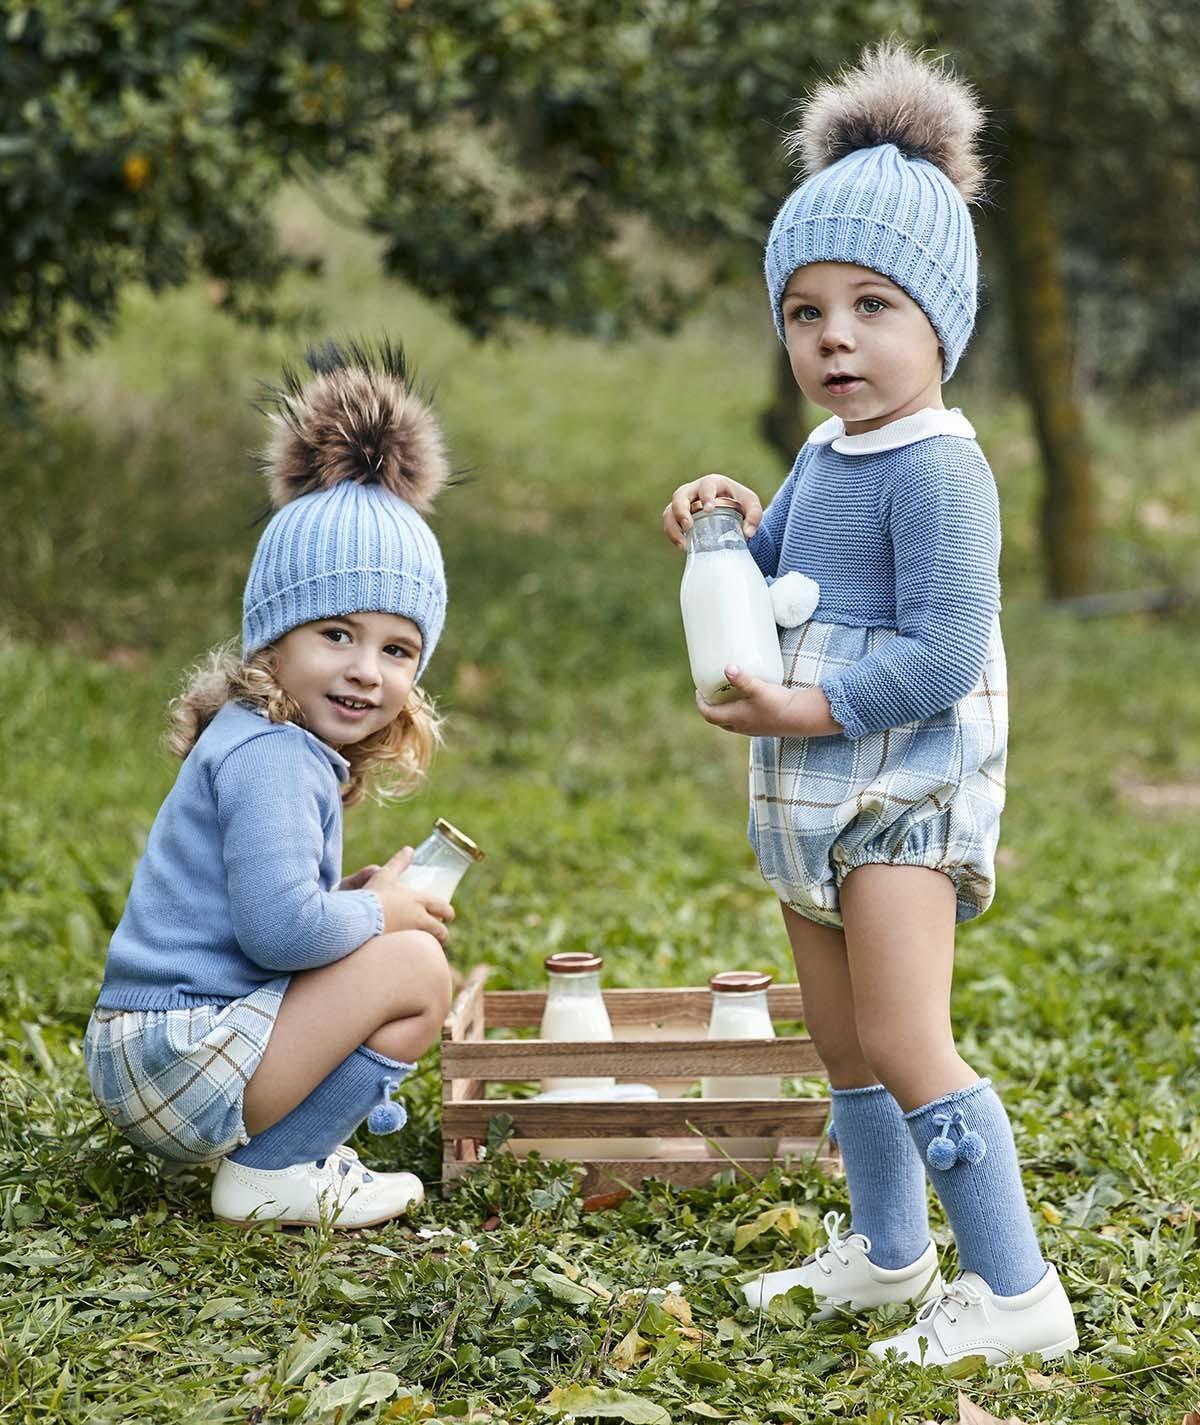 Compra Calcetines de Niño Productos en línea - Ropa de Niños